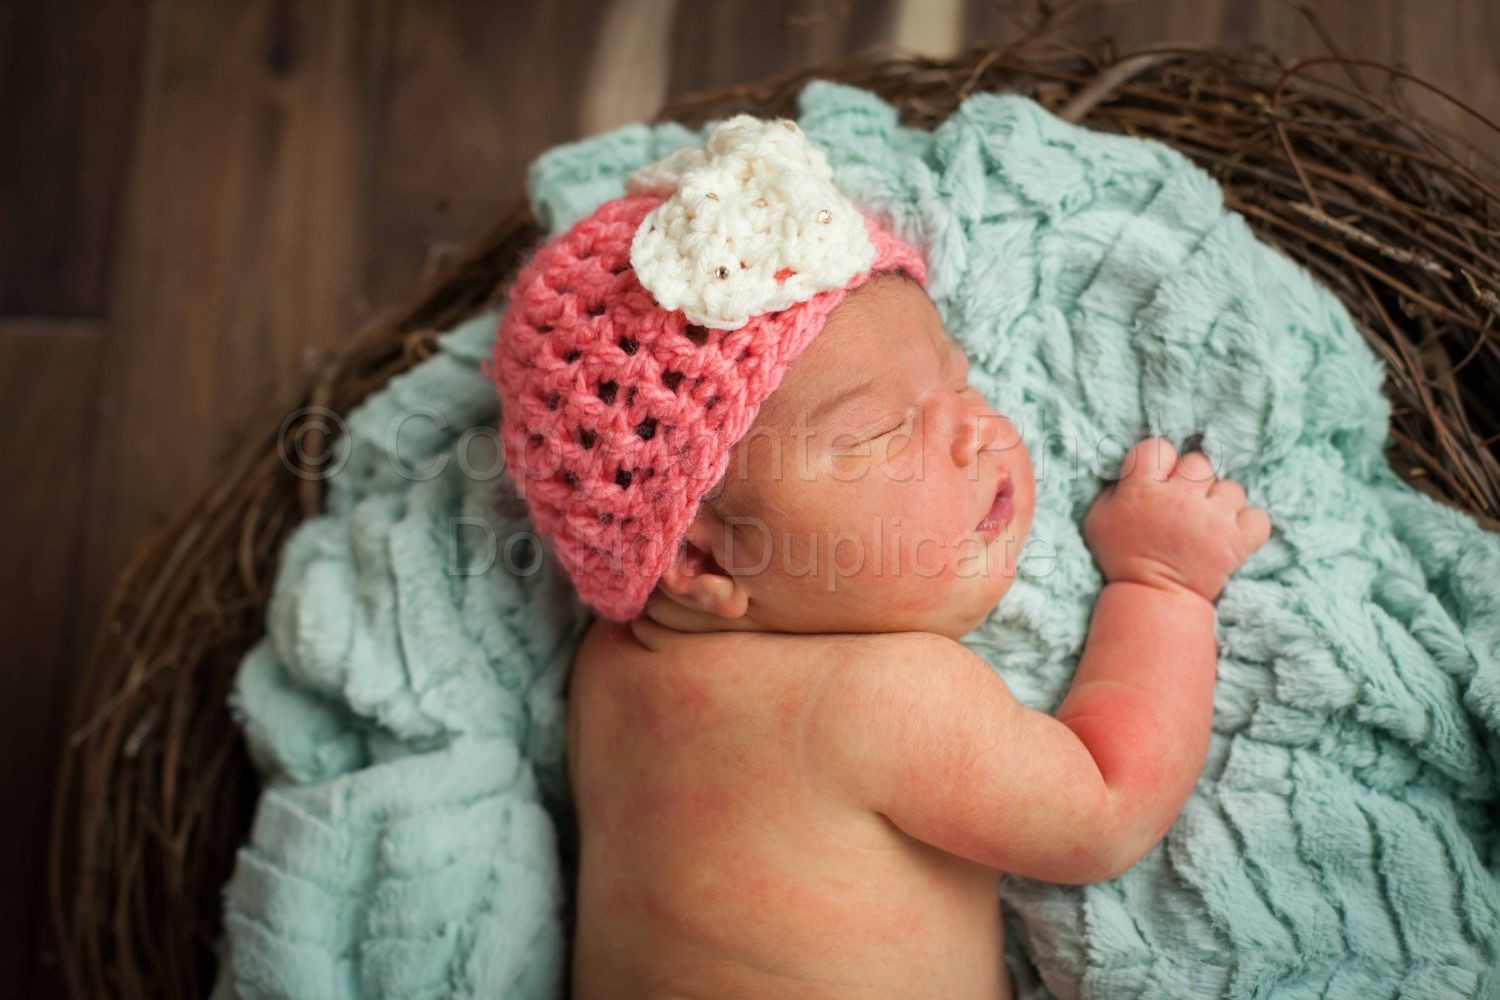 Sweet Baby Girl! | Macomb County Child Photographer | Stockton_Newborn-124.jpg